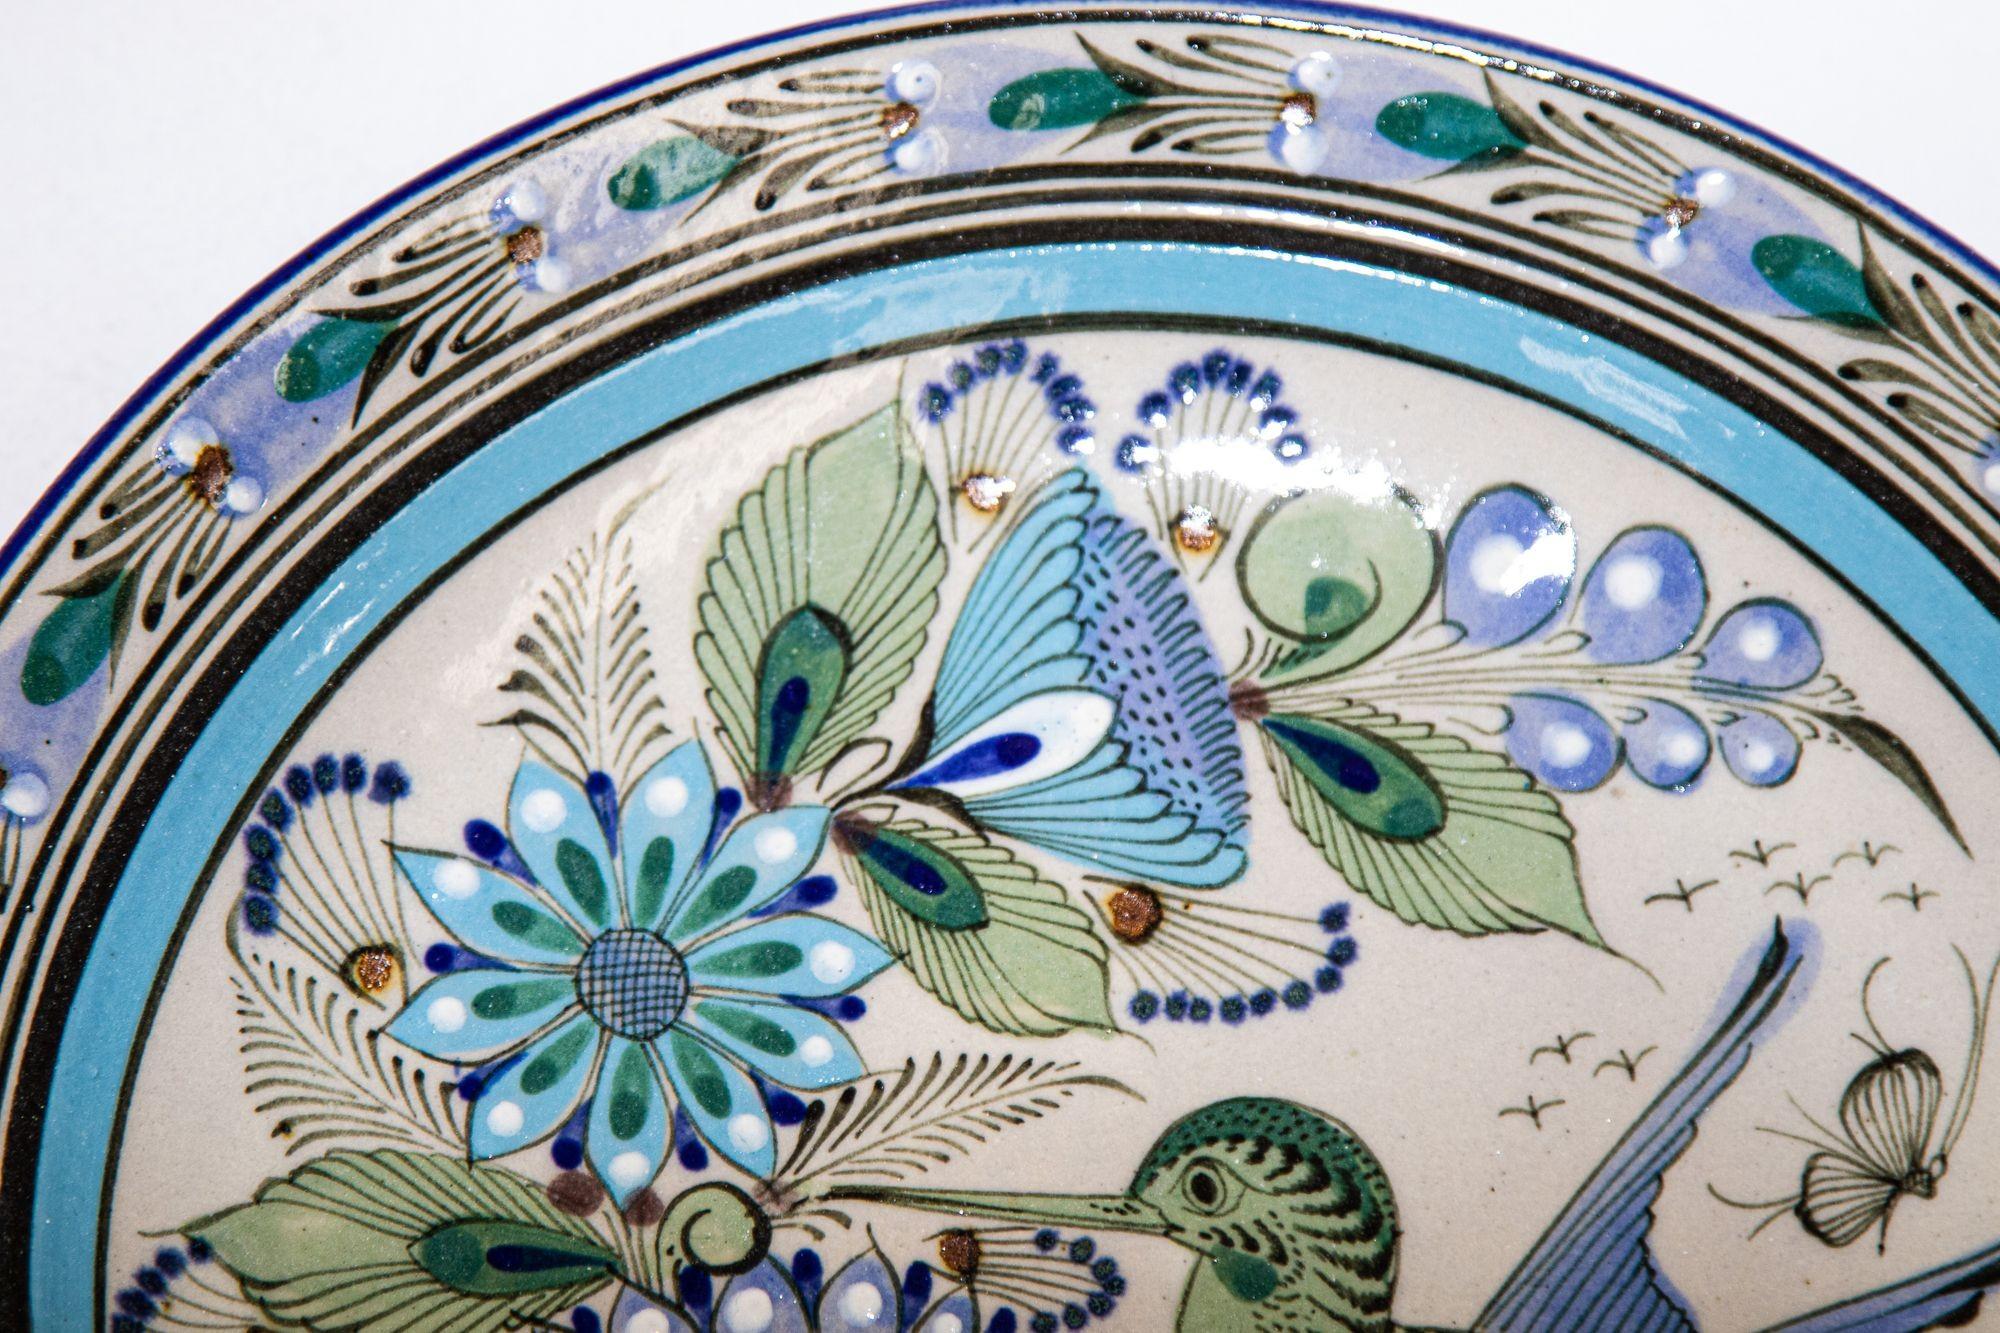 Assiette en céramique fabriquée à la main par Ken Edwards, poterie d'art populaire de Tonala Mexico.
Vintage Ken Edwards, dessous de plat en céramique mexicaine représentant un oiseau, provenant de la poterie Tonala.
Magnifique poterie d'art